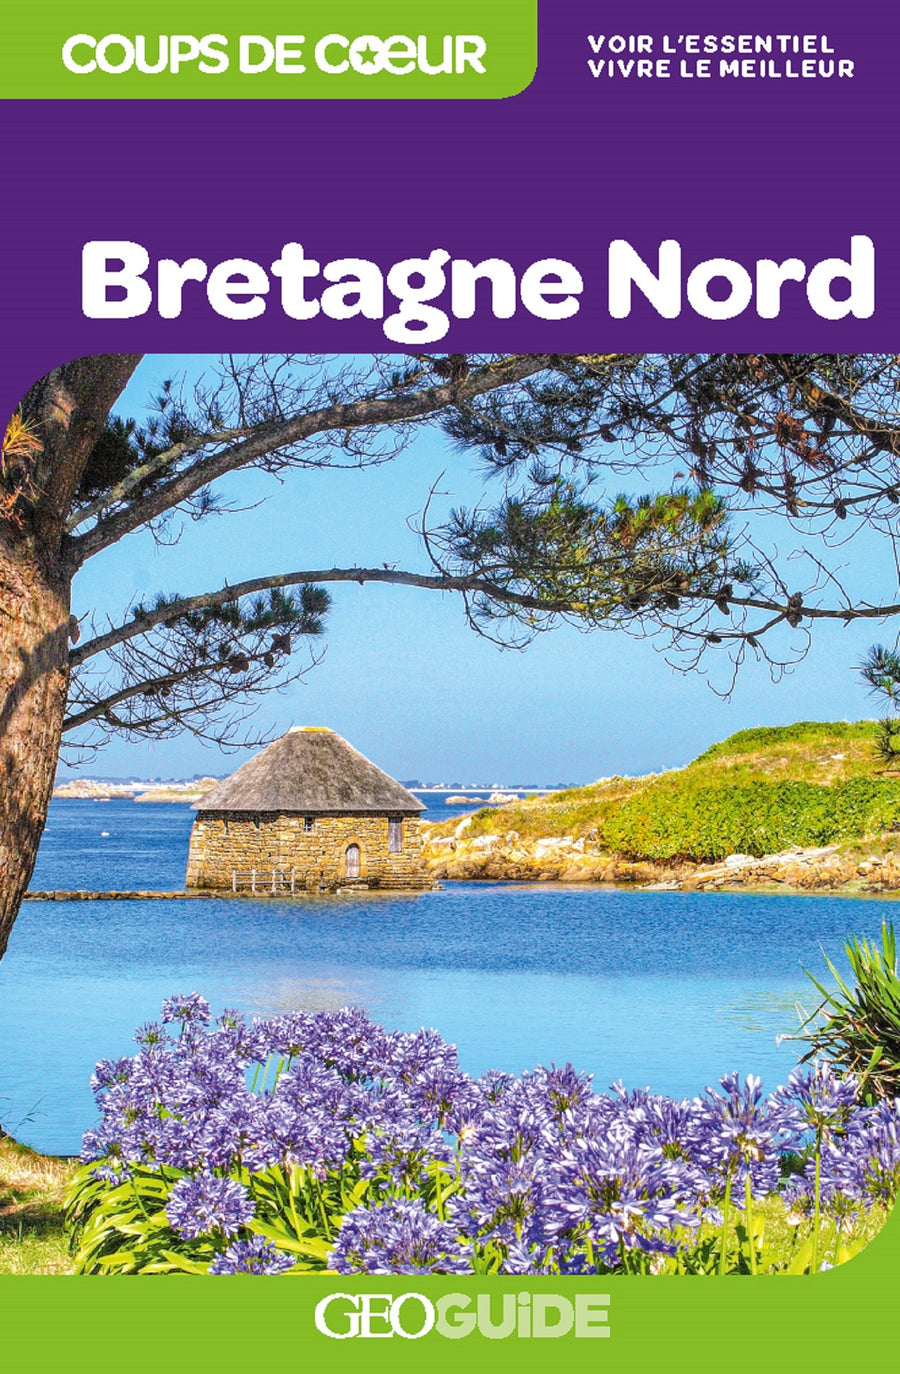 Géoguide (coups de coeur) - Bretagne Nord | Gallimard guide de voyage Gallimard 